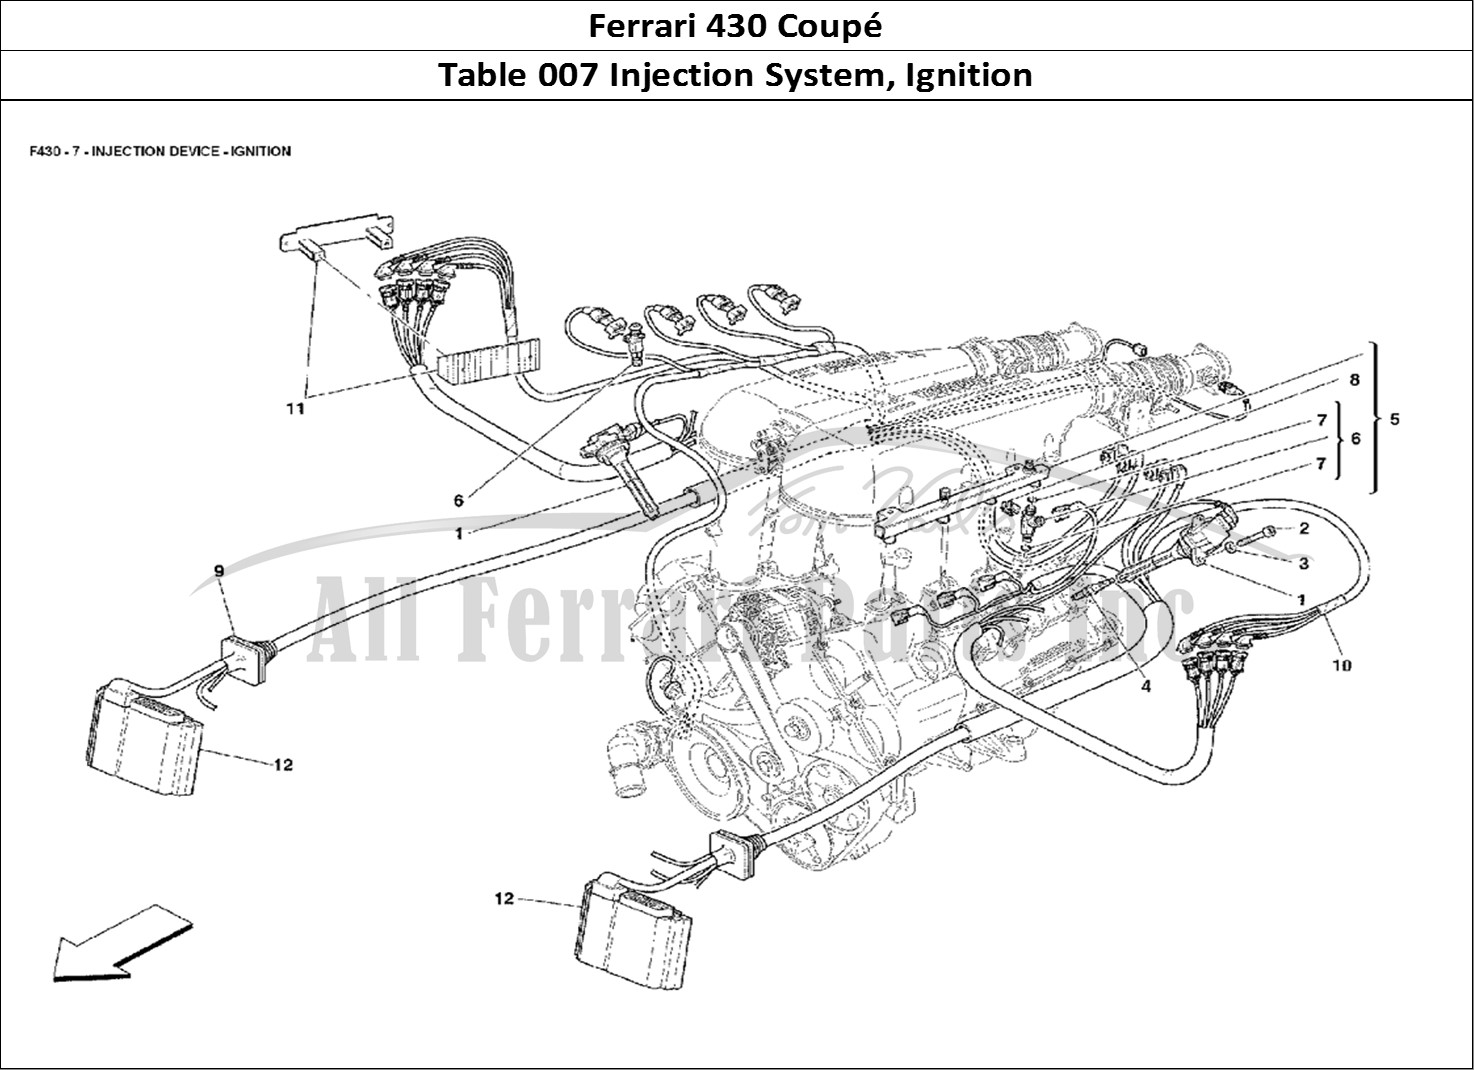 Ferrari Parts Ferrari 430 Coup Page 007 Injection Device - Igniti